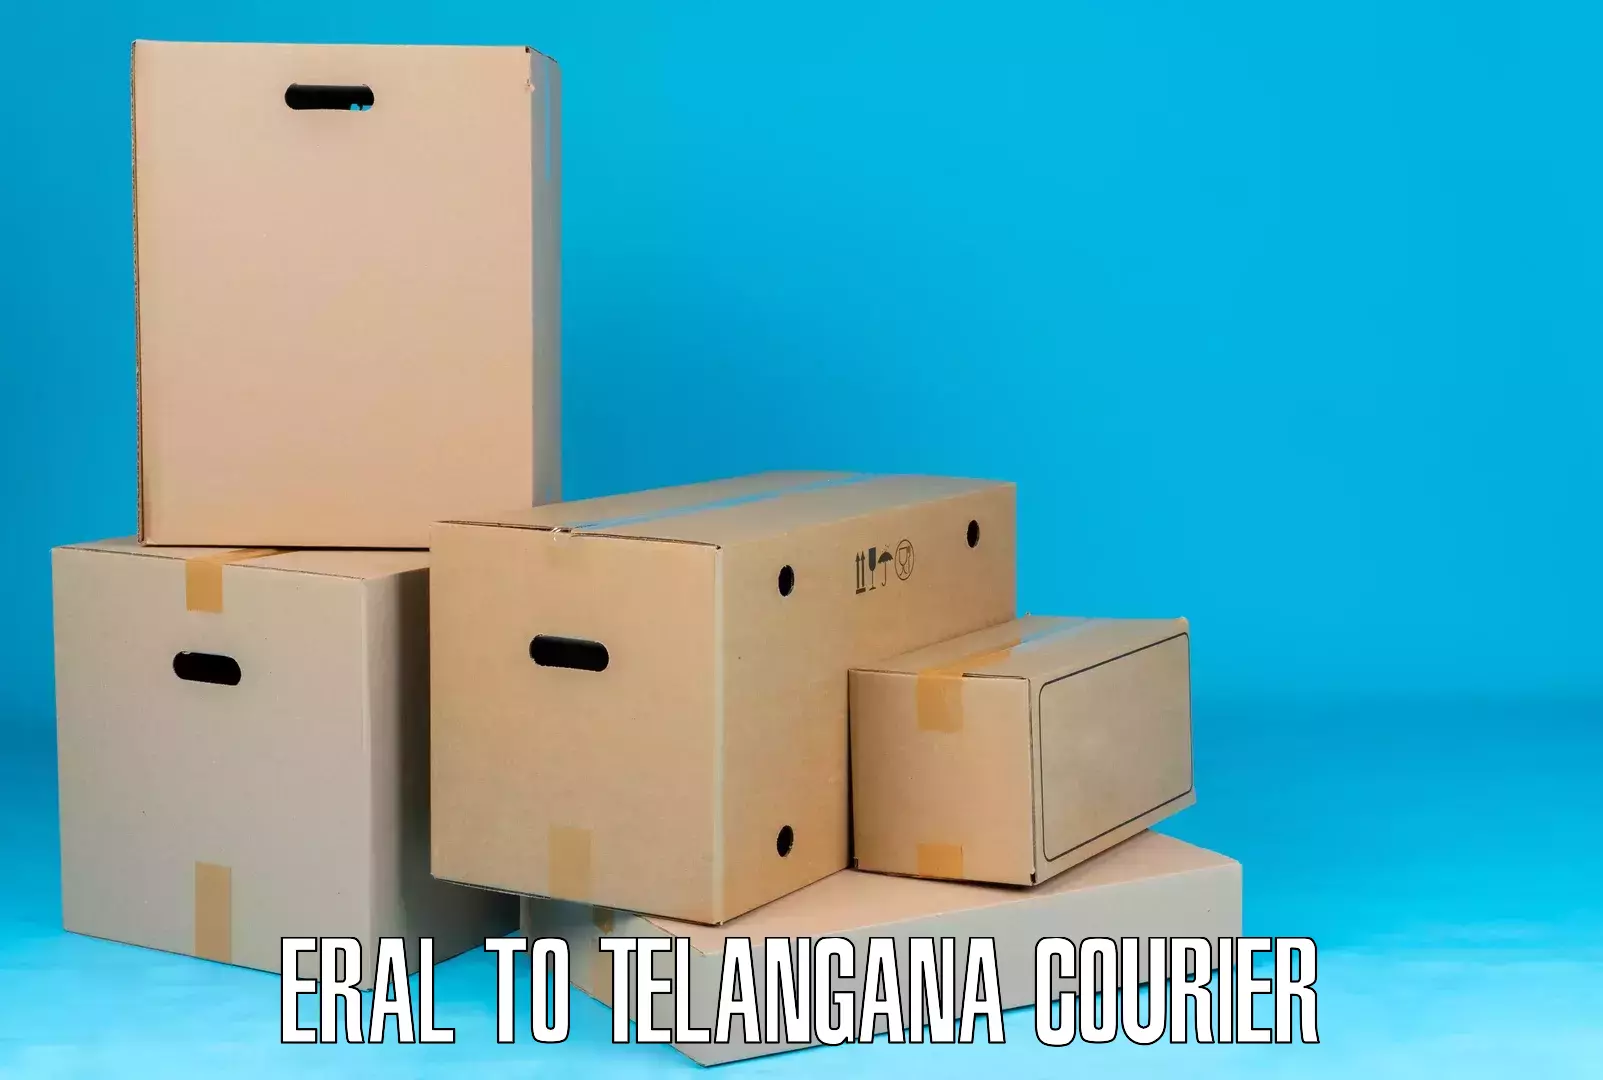 Efficient cargo handling Eral to Telangana